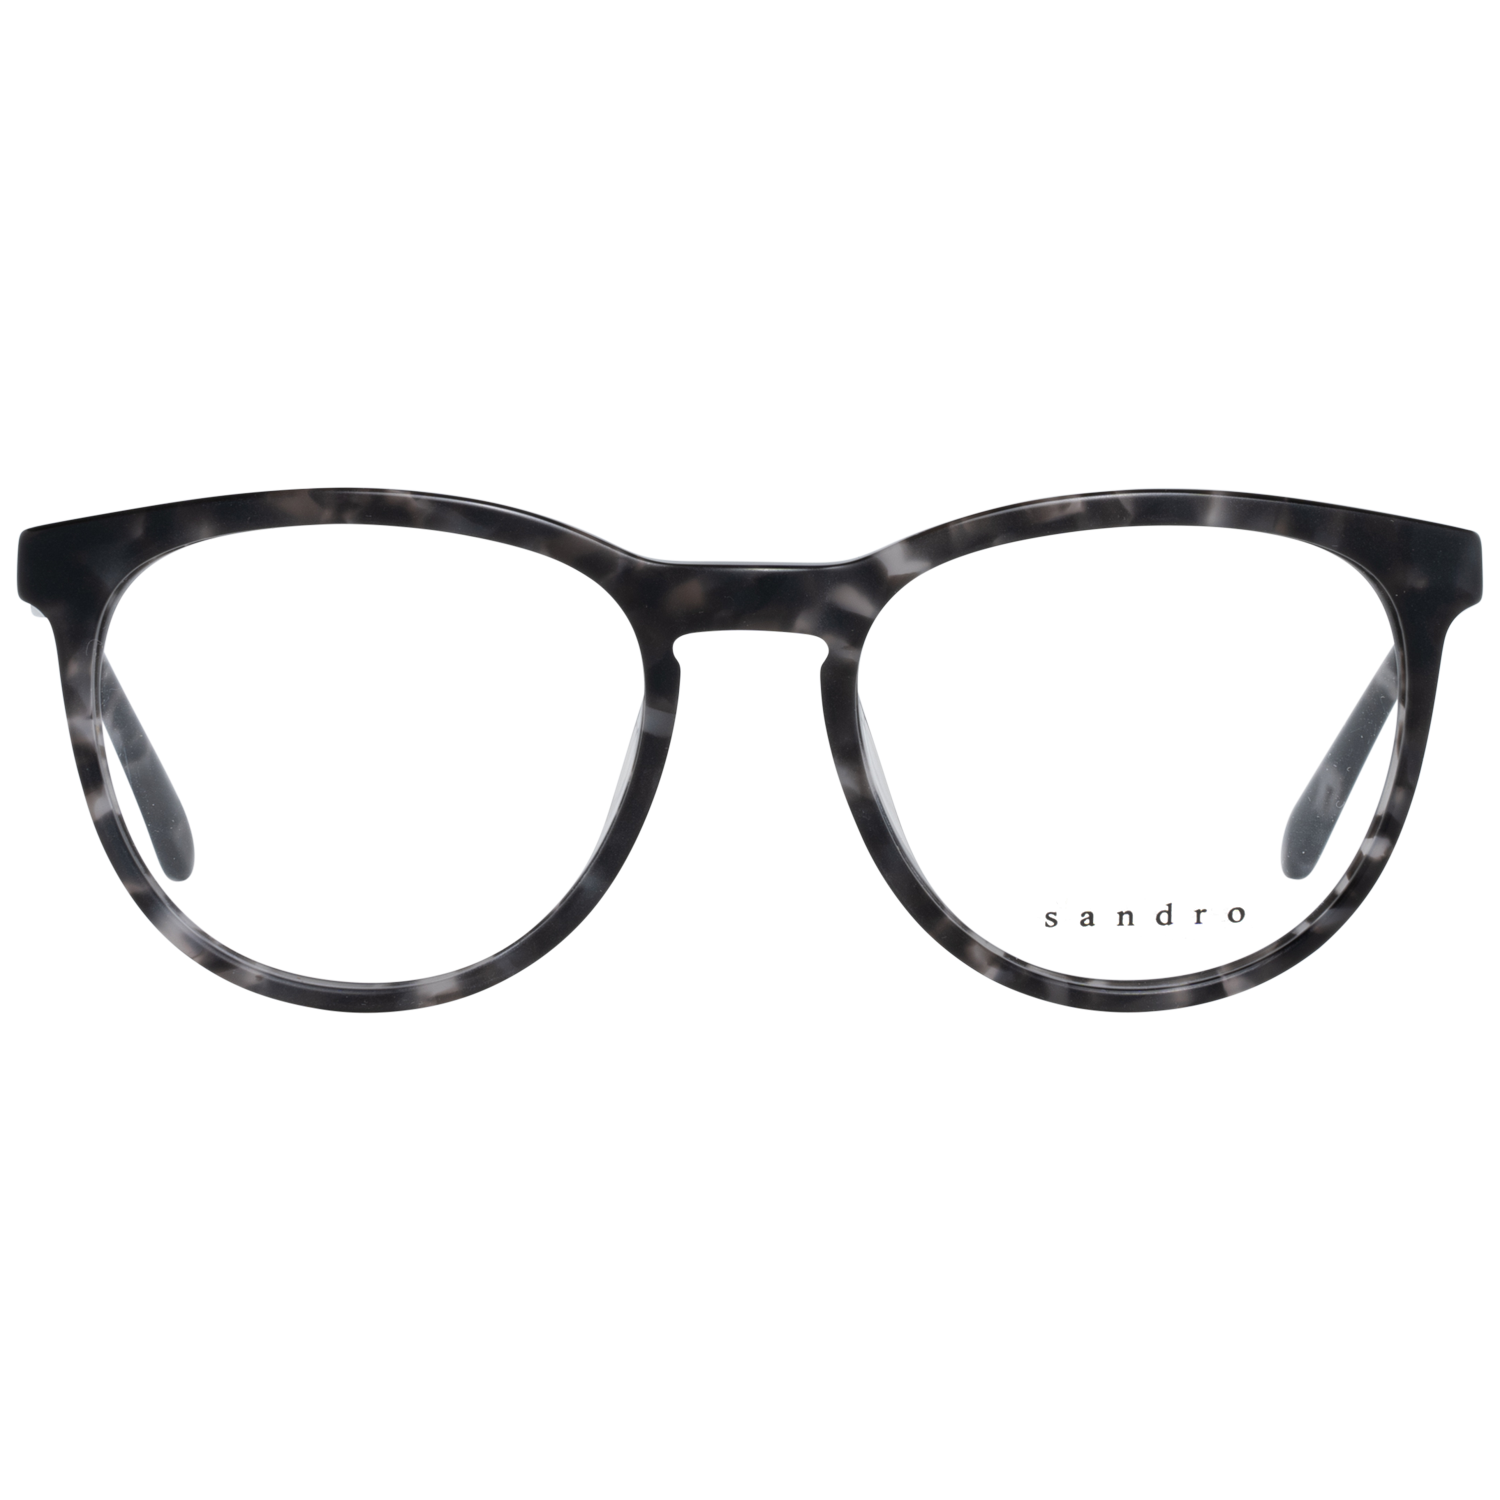 Sandro Frames Sandro Optical Frame SD1012 207 51 Eyeglasses Eyewear UK USA Australia 